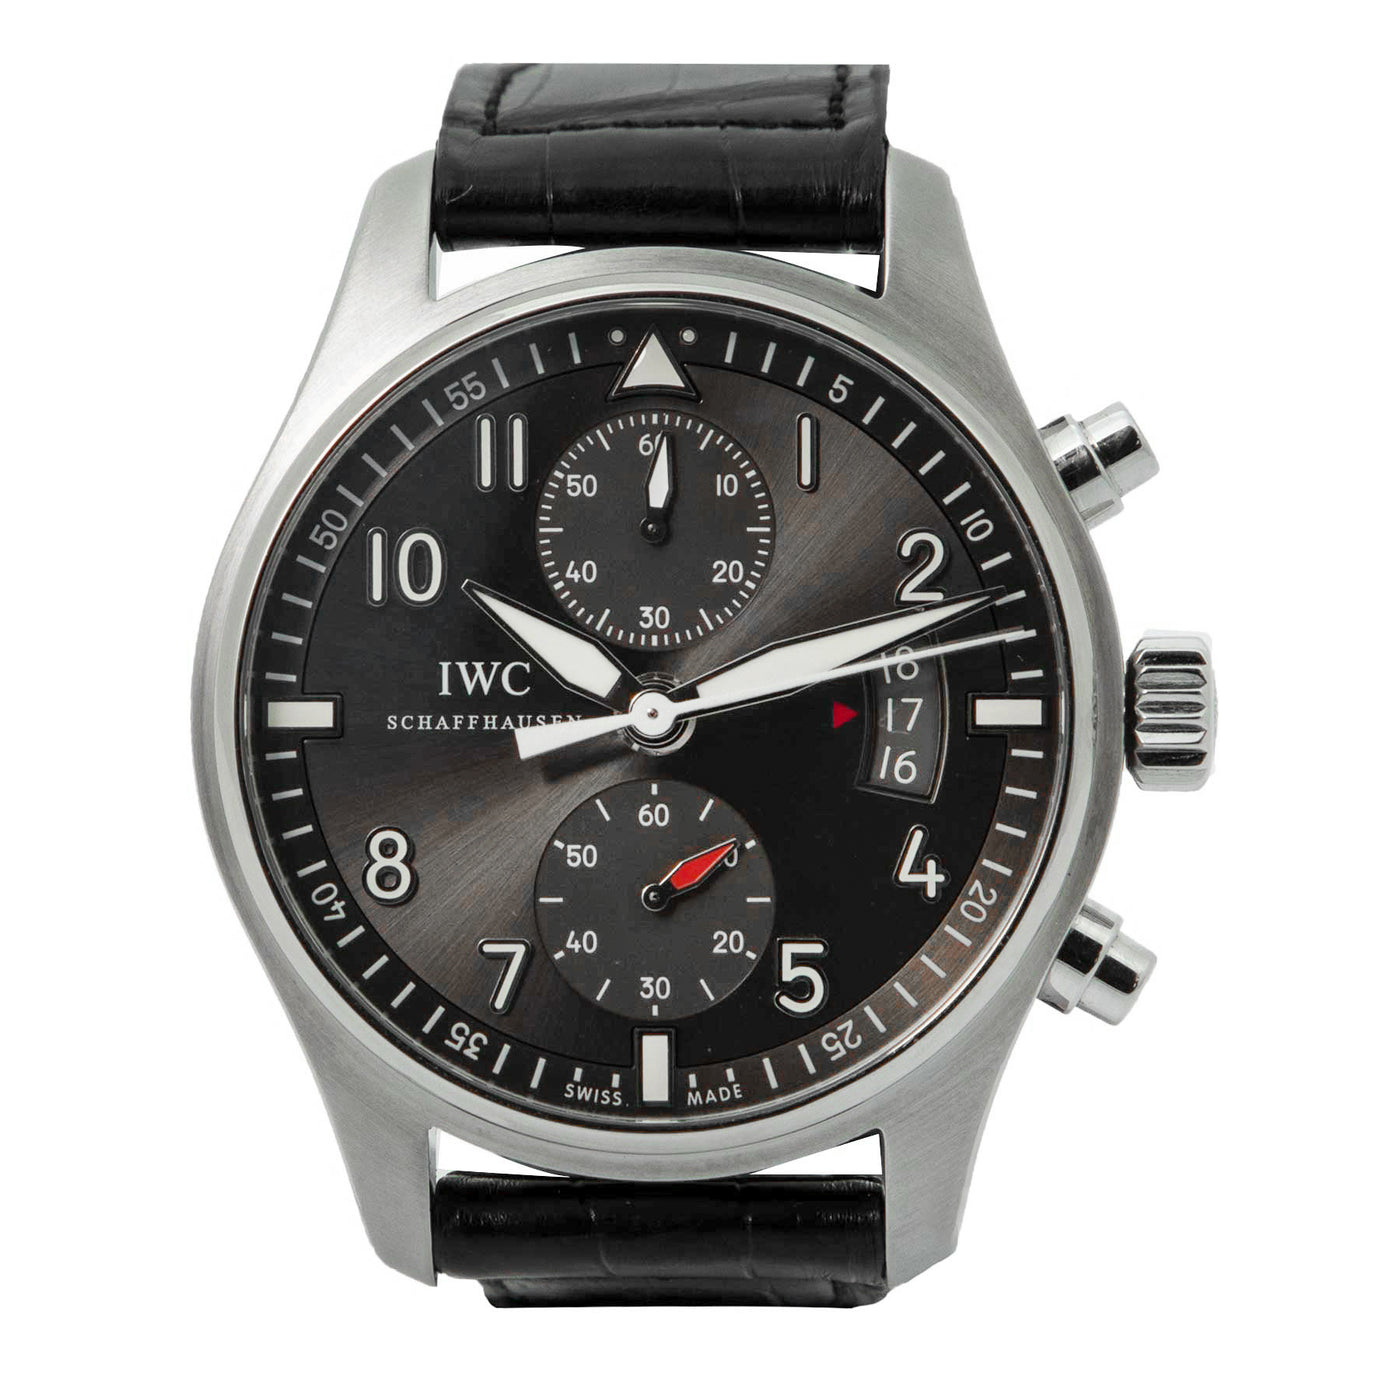 Spitfire Chronograph-Timepiece360